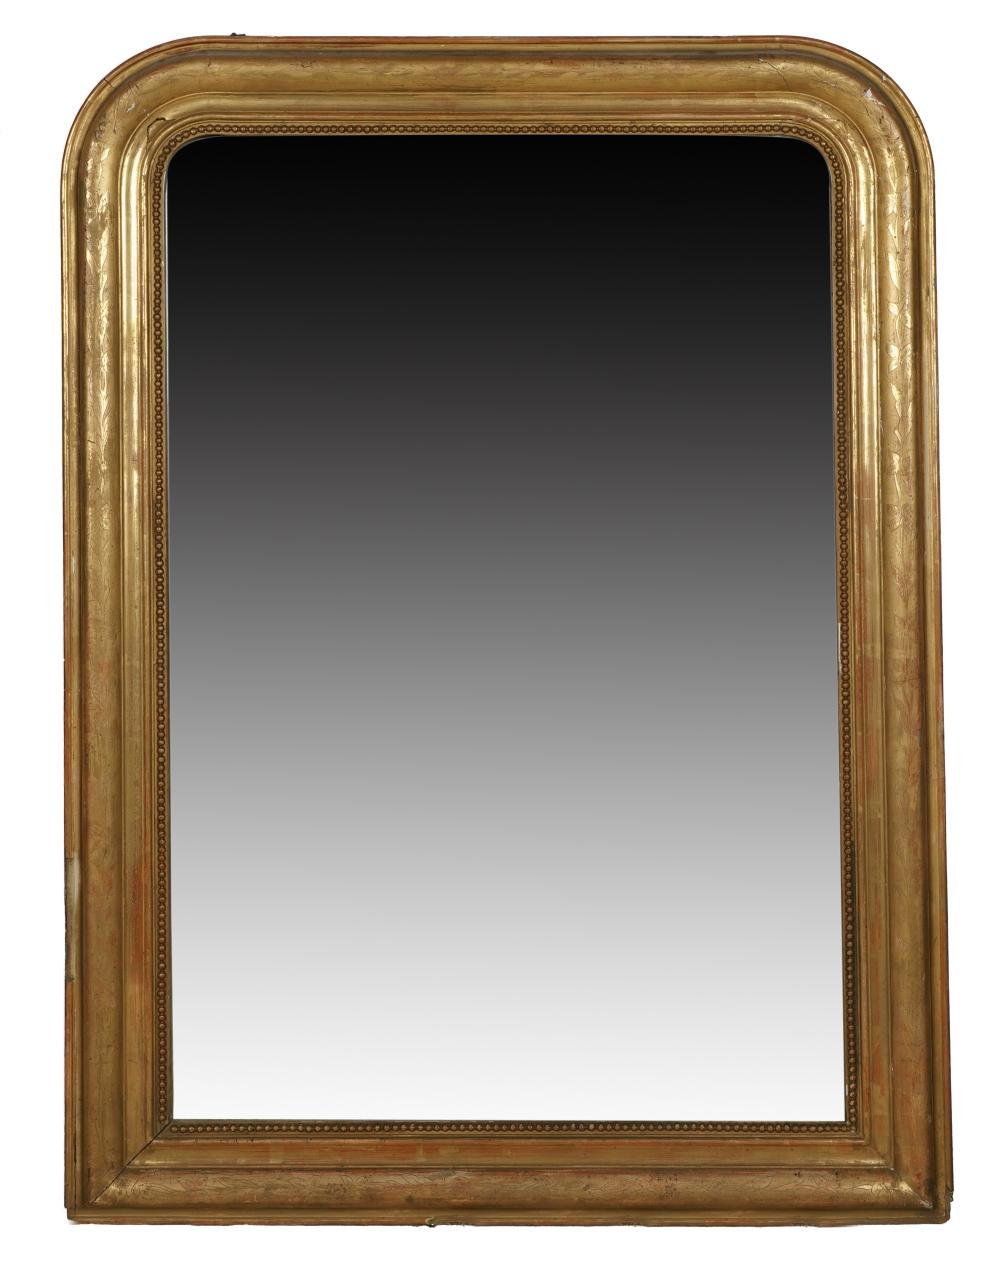 GILTWOOD WALL MIRRORthe flat mirror 32fb06